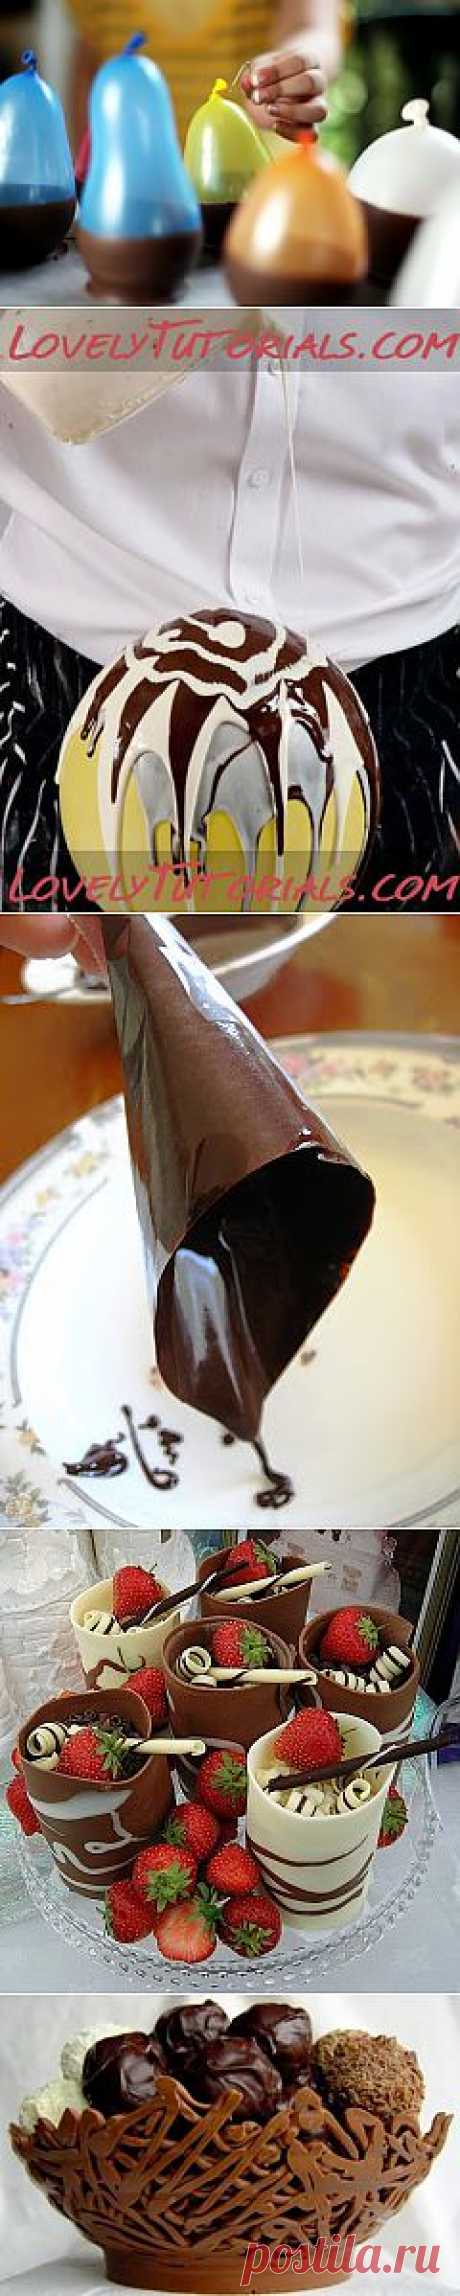 мои находки: как изготовить шоколадные чашечки для десерта